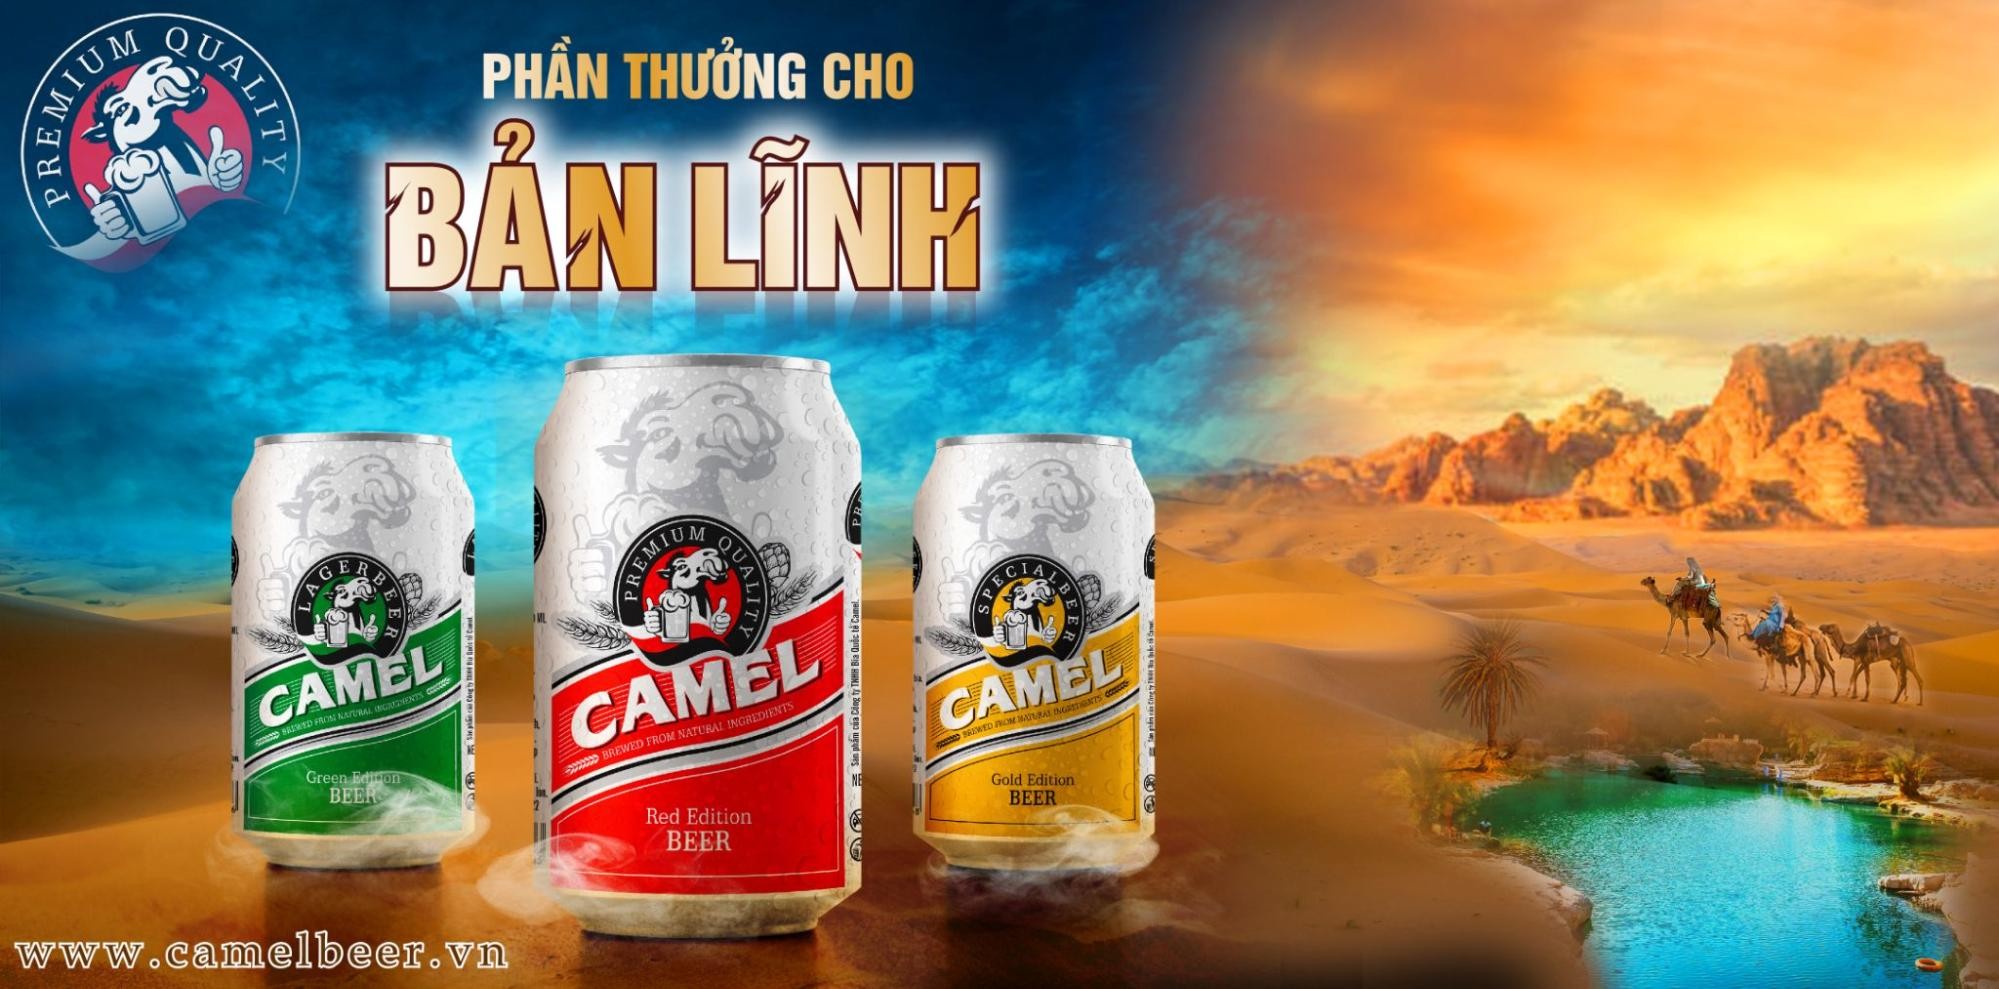 Camel Beer - Hương vị truyền thống của người Việt